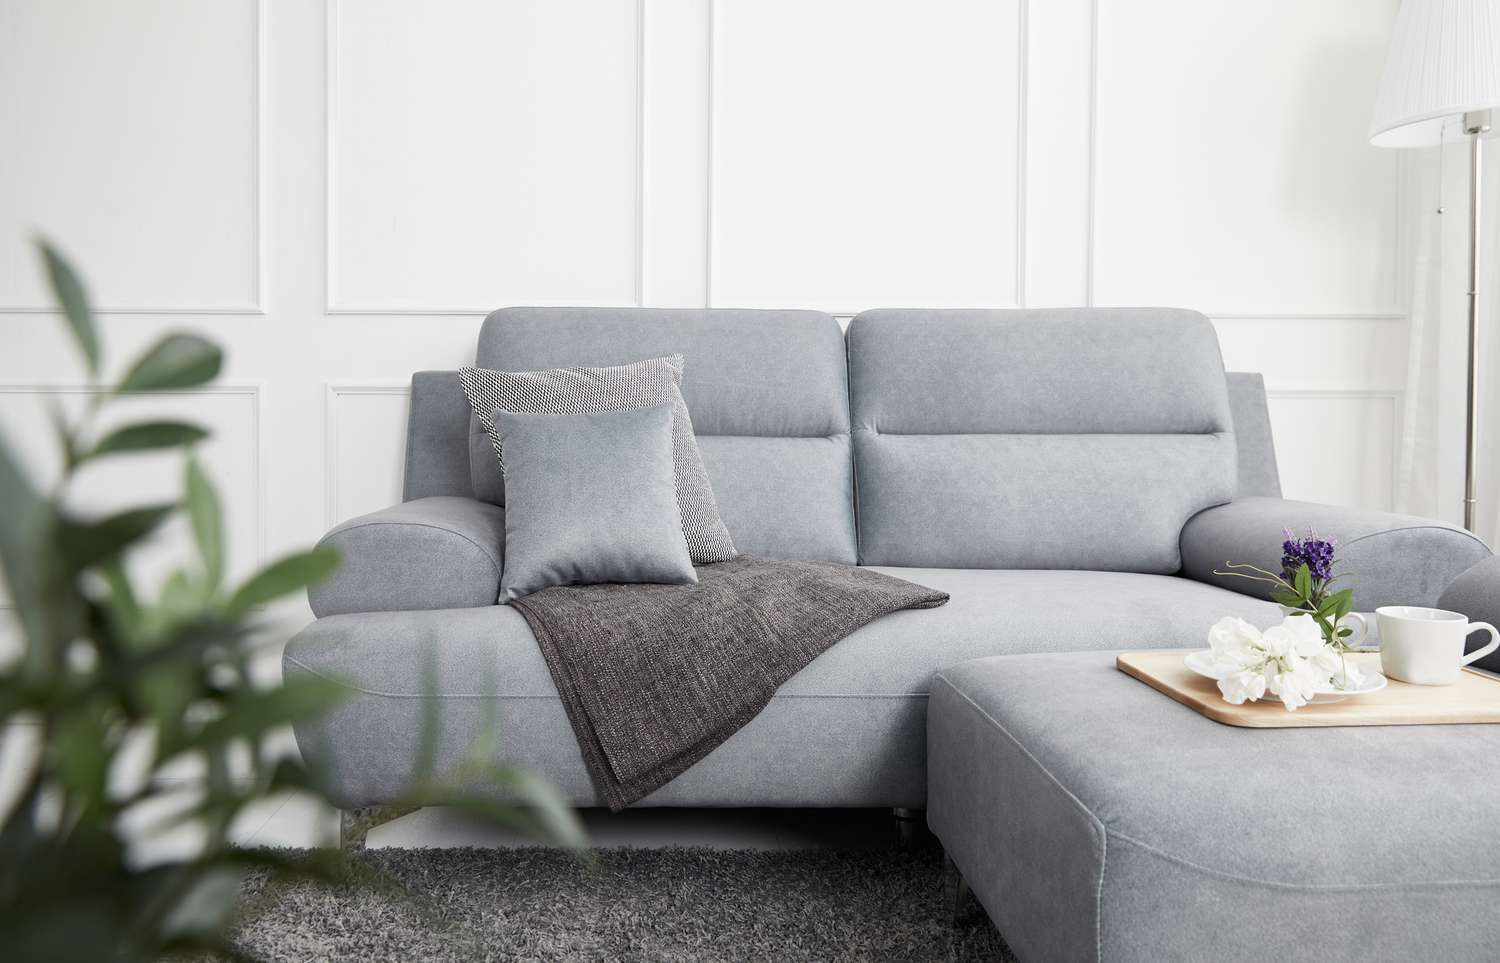 Salon de style scandinave avec canapé en tissu, table de canapé. image du matin avec plante. table de canapé sur le lug.